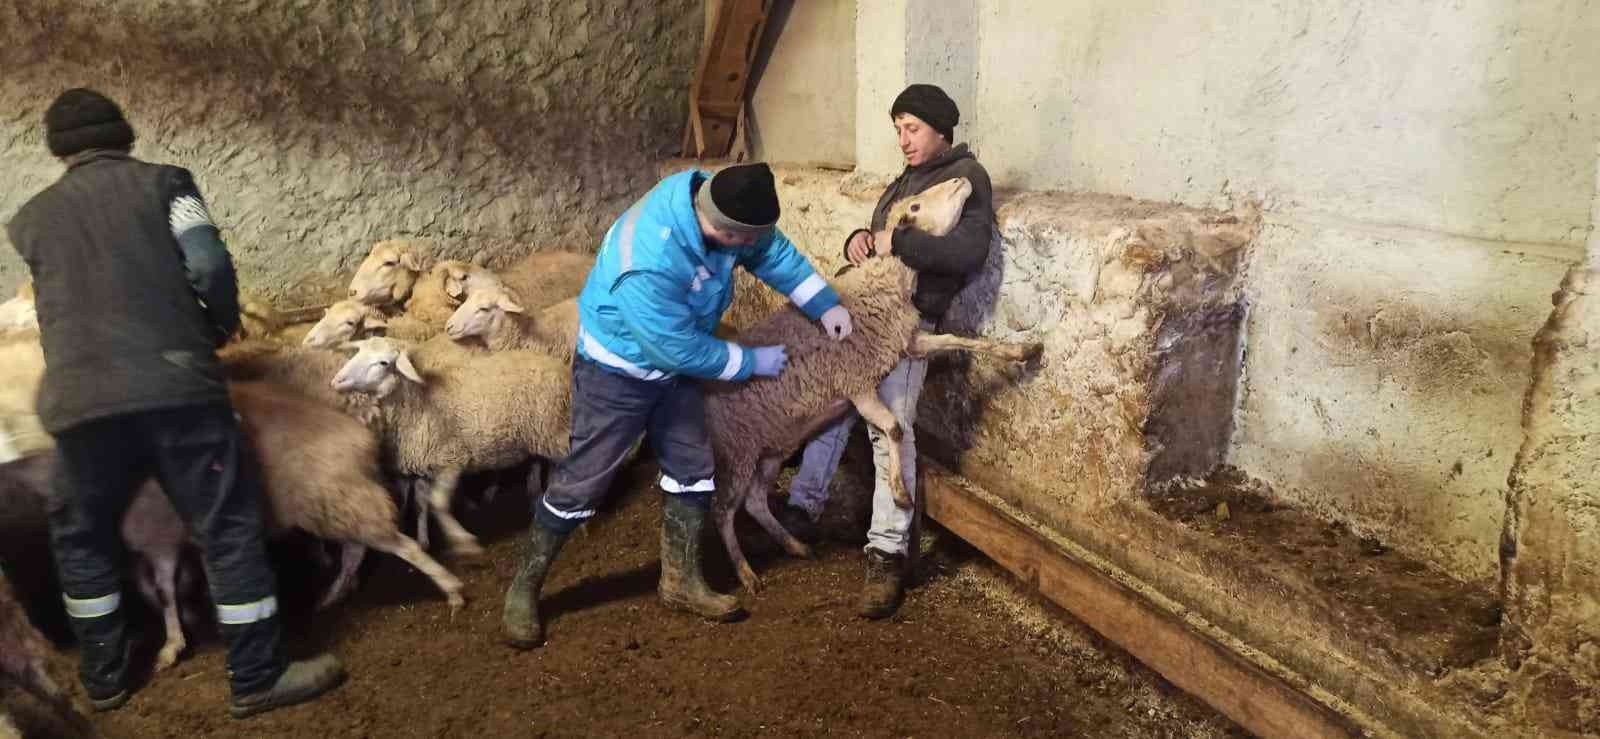 Kütahya’da anaç koyun keçi tespit ve aşılama çalışmaları #kutahya